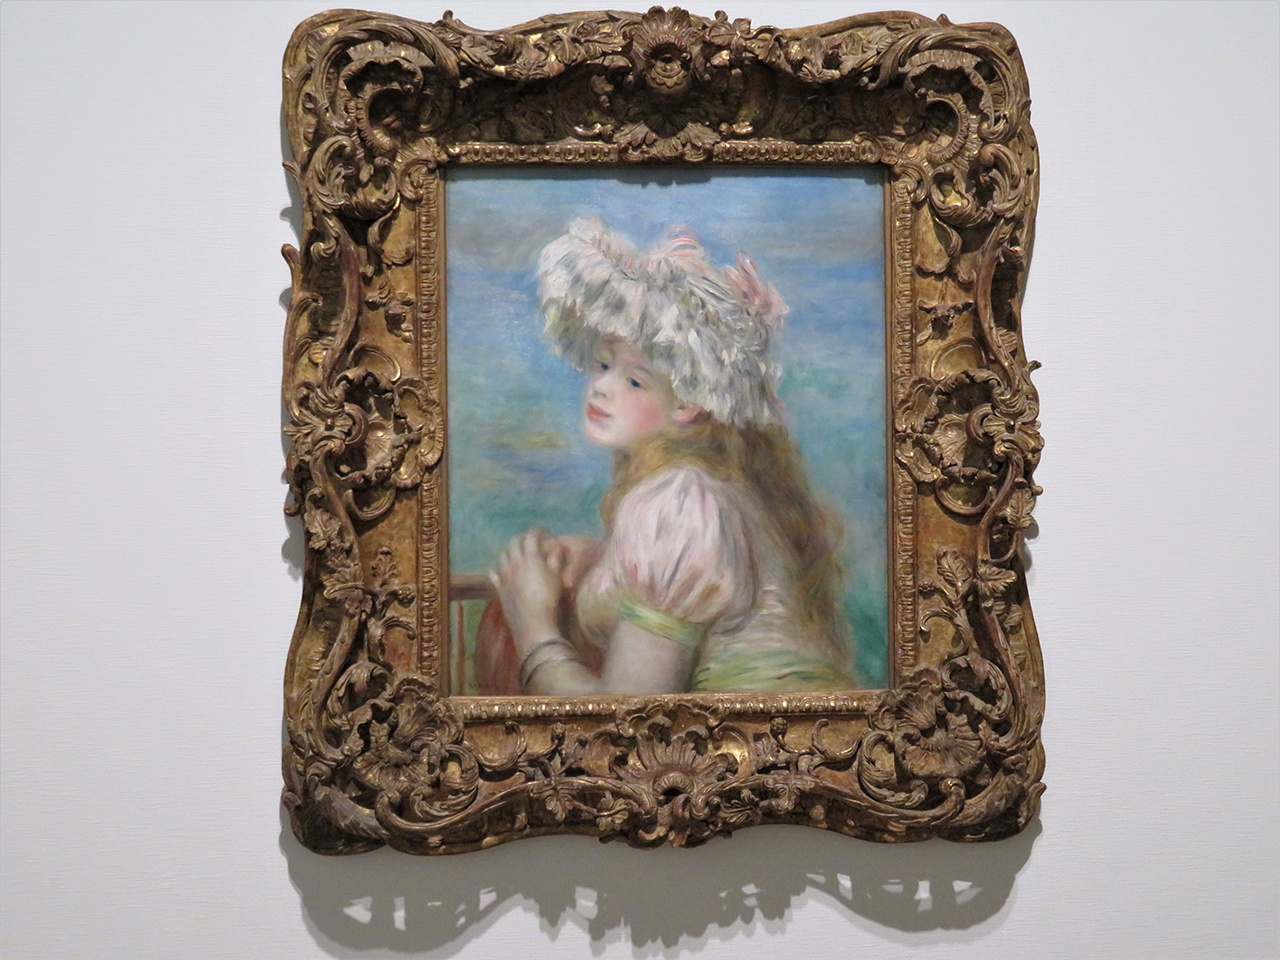 会場風景（以下同様）。ピエール・オーギュスト・ルノワール《レースの帽子の少女》1891年　作品はすべてポーラ美術館蔵。この少女は、ポーラ美術館の永遠のアイドルだ。